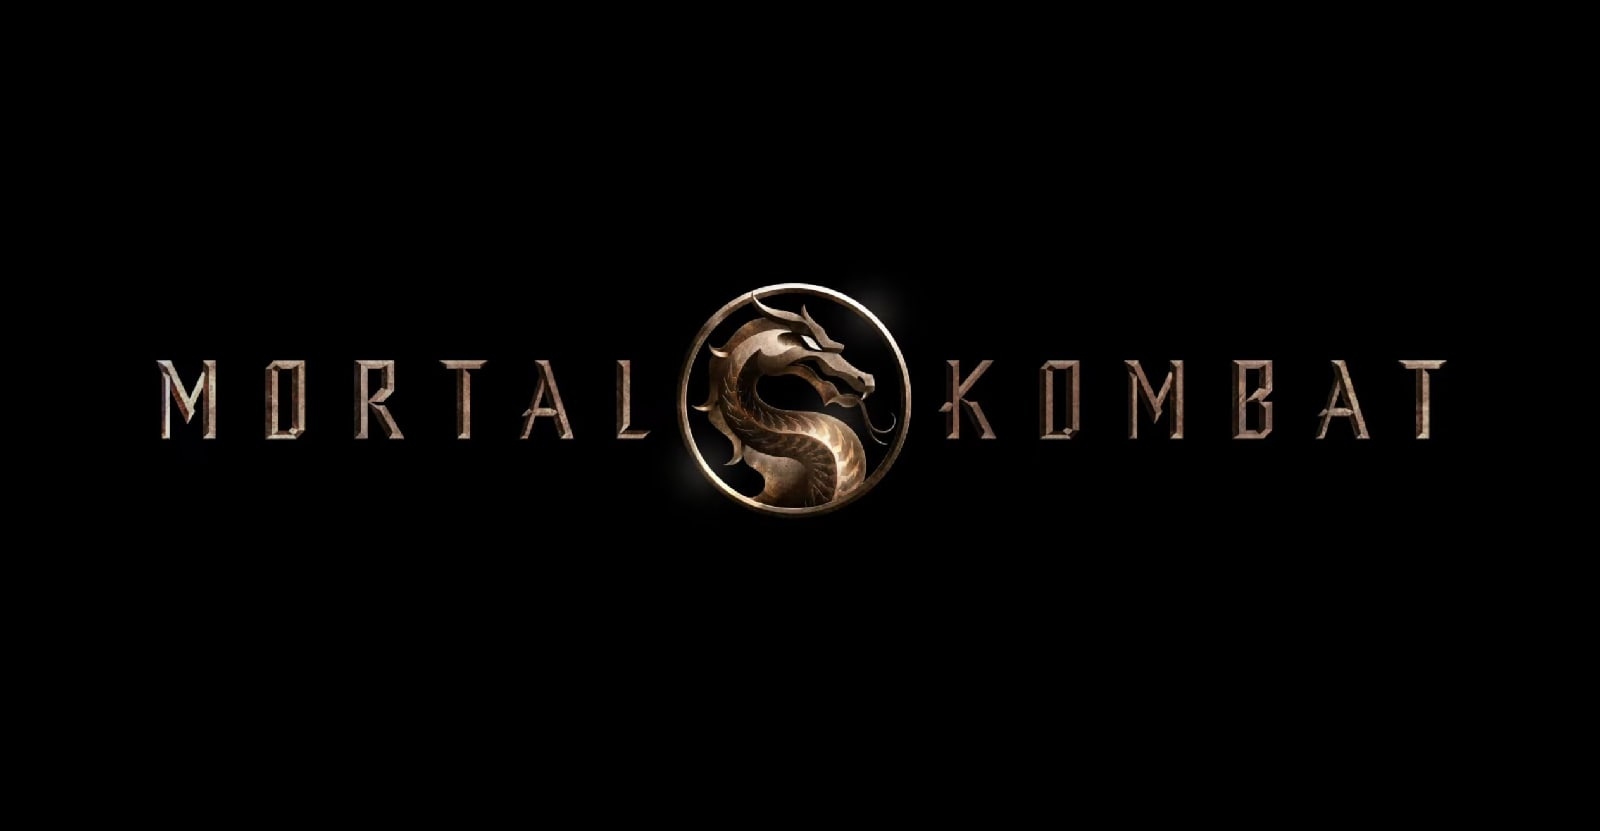 Wallpaper Image Picpile Mortal Kombat HD Desktop